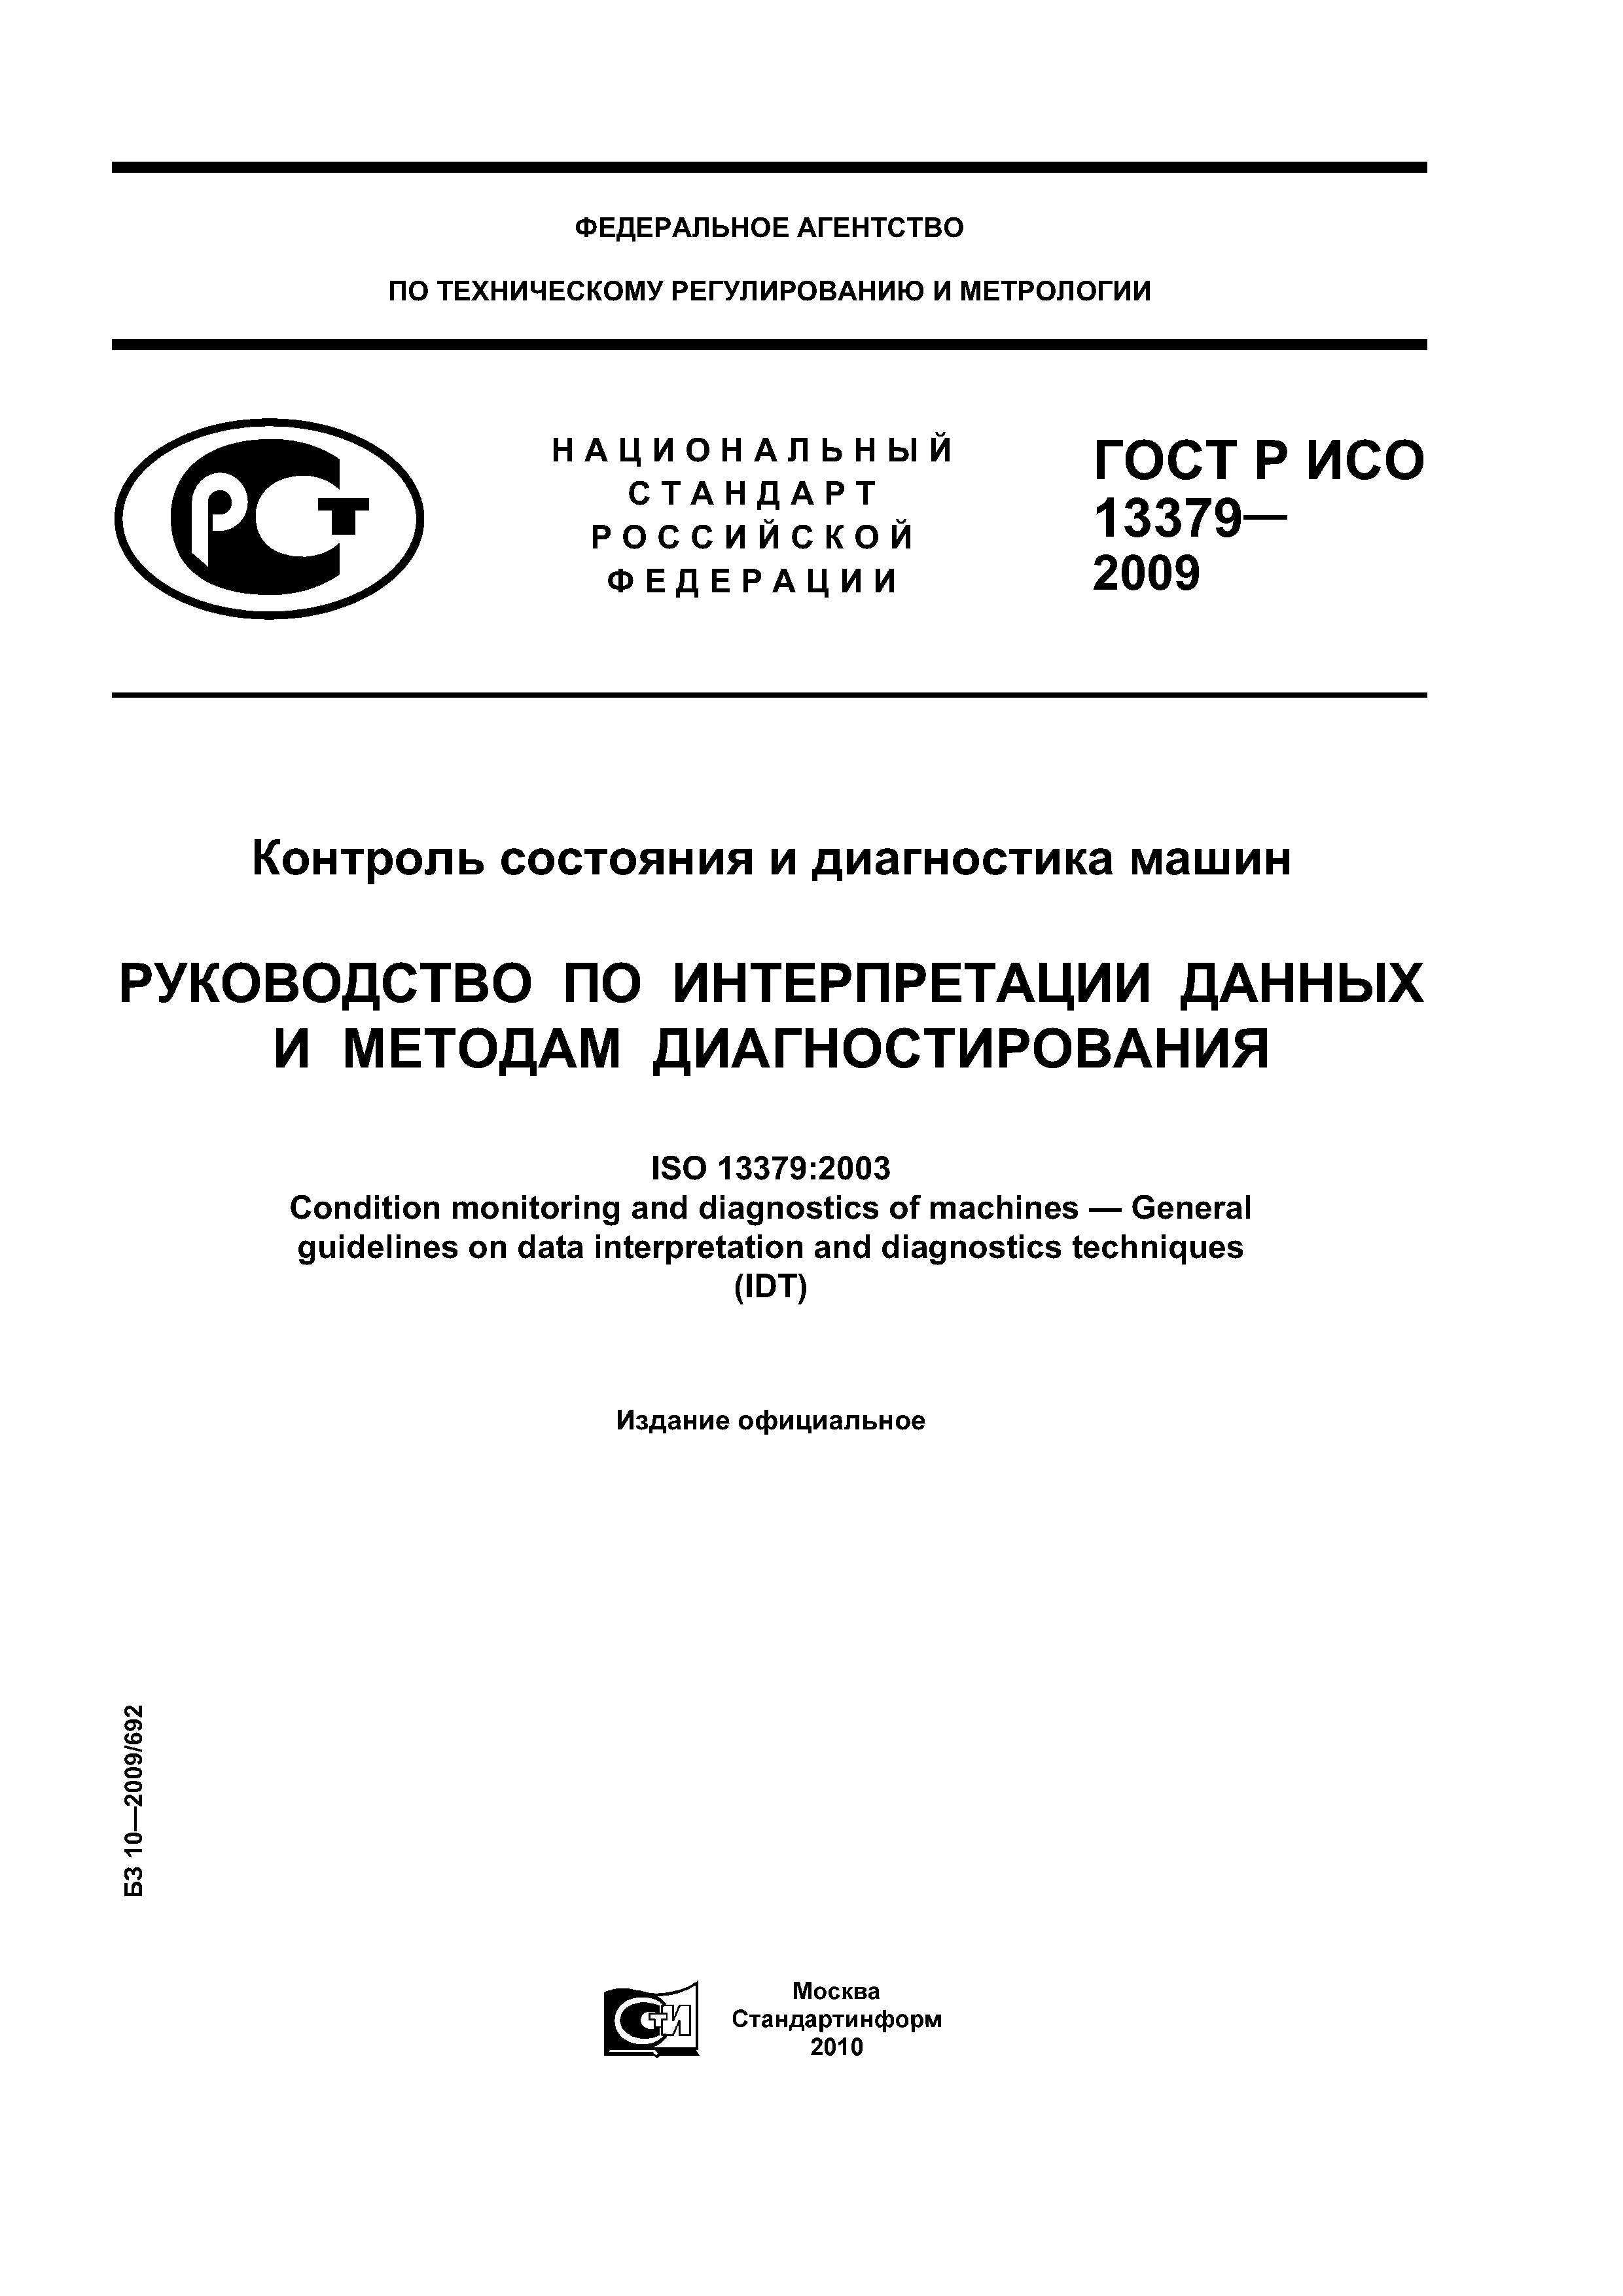 ГОСТ Р ИСО 13379-2009